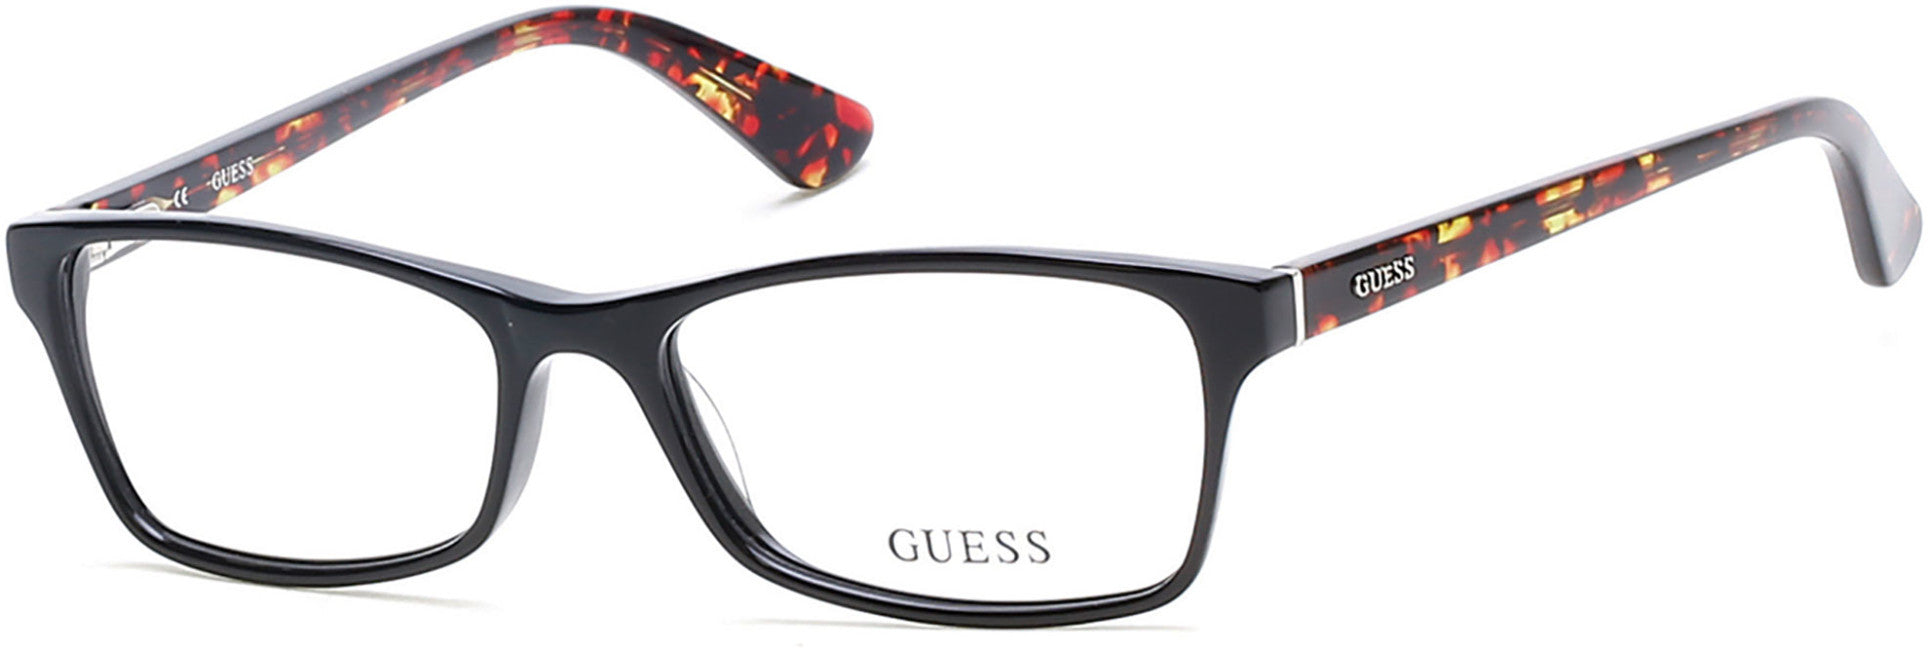 Guess GU2549-F Geometric Eyeglasses 001-001 - Shiny Black